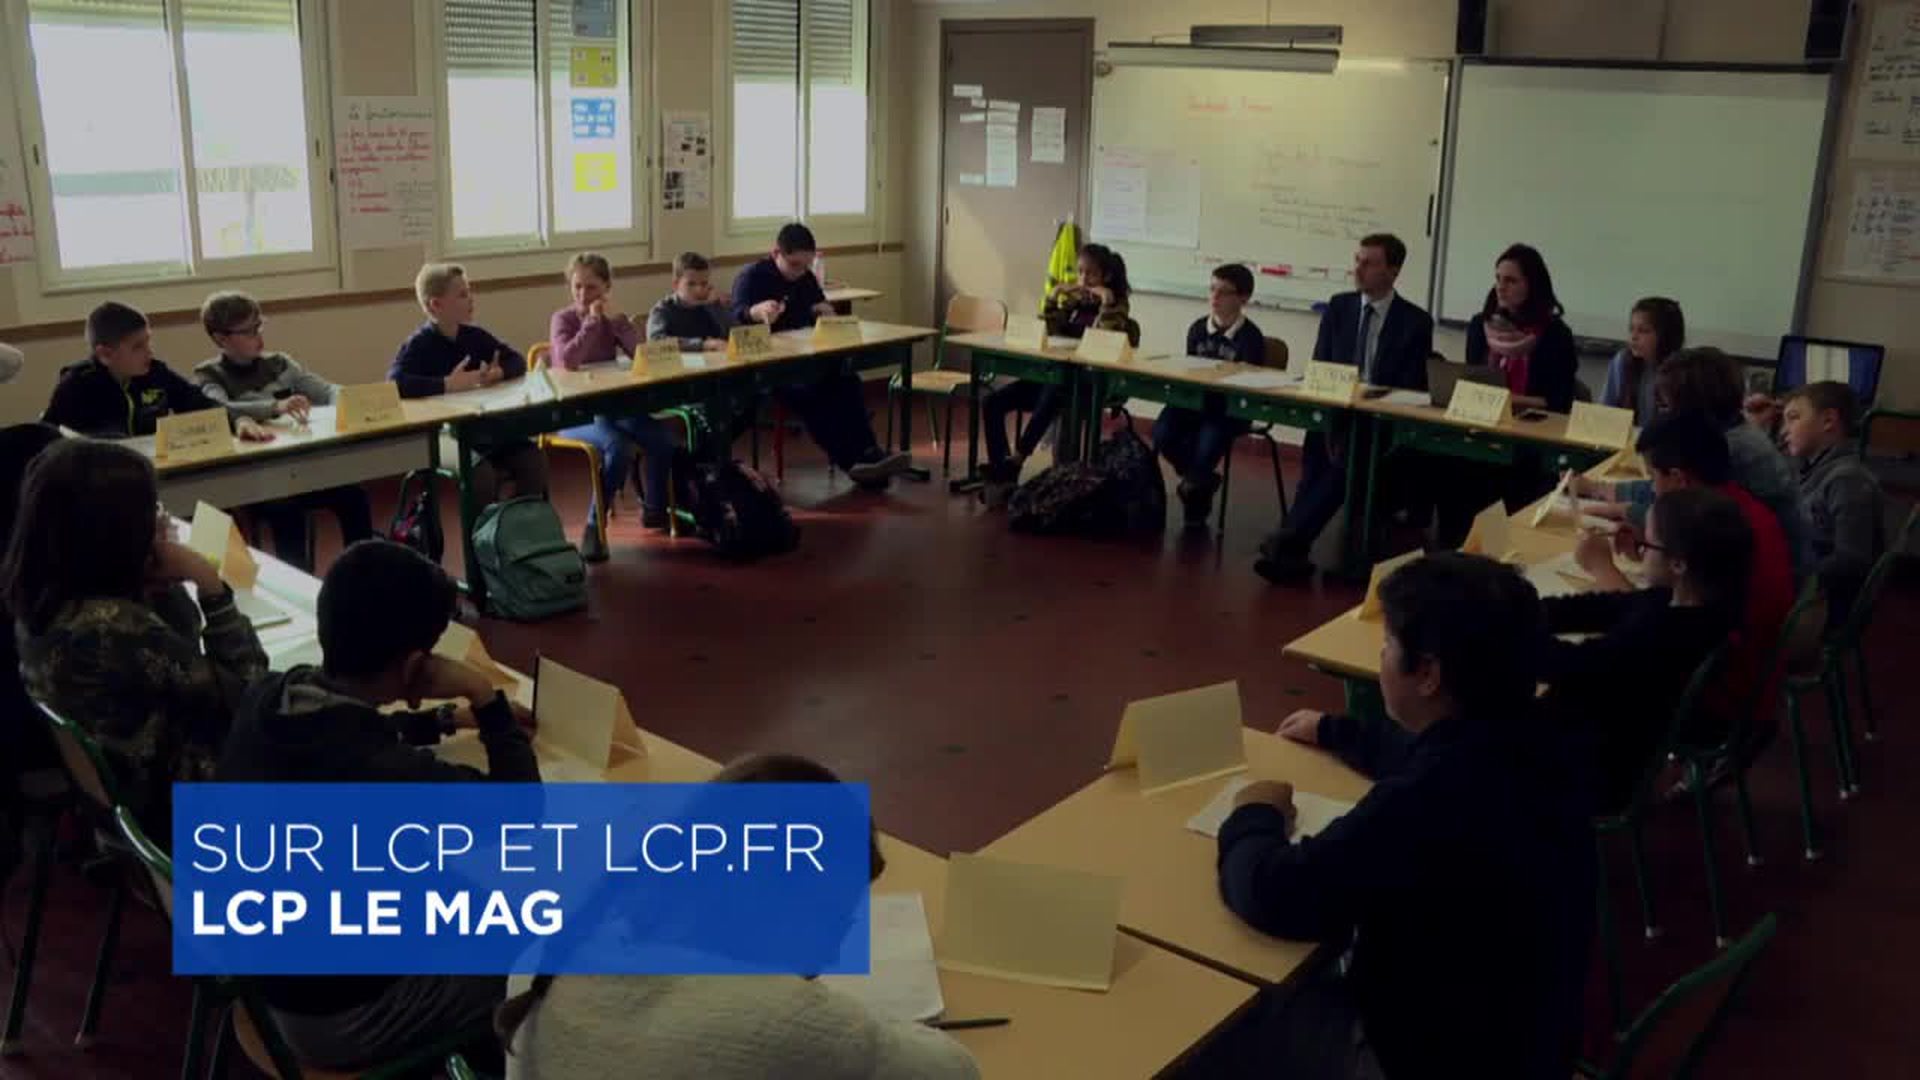 LCP le mag : Assemblée nationale : quand les enfants font la loi